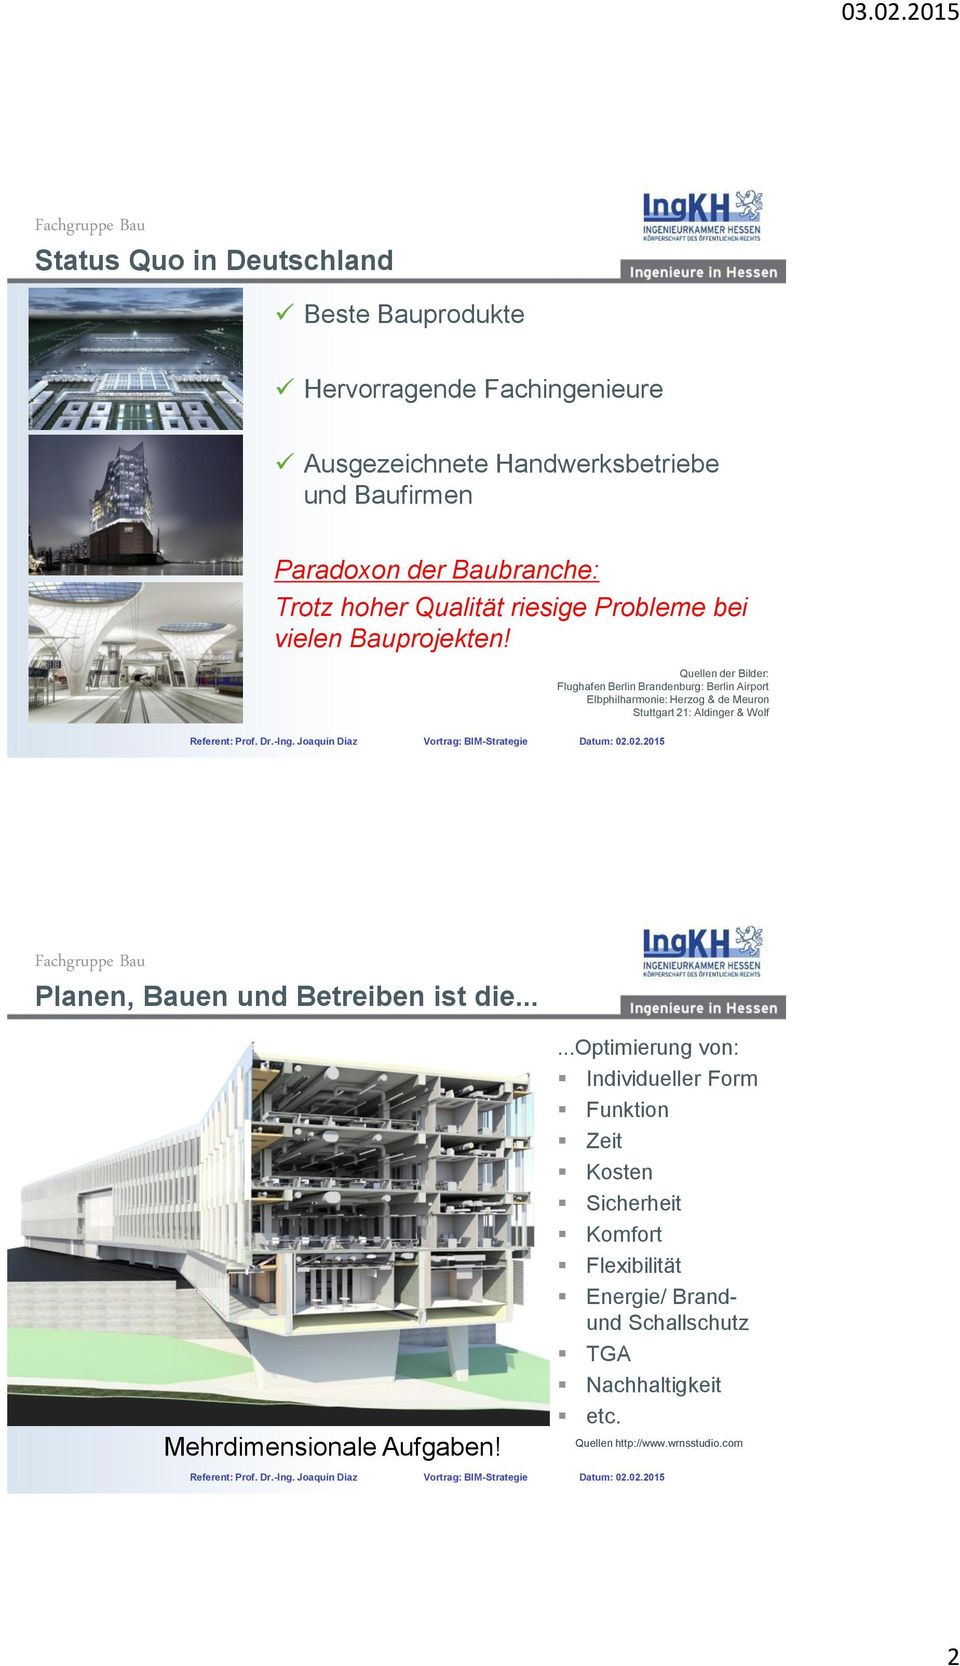 Quellen der Bilder: Flughafen Berlin Brandenburg: Berlin Airport Elbphilharmonie: Herzog & de Meuron Stuttgart 21: Aldinger & Wolf Planen, Bauen